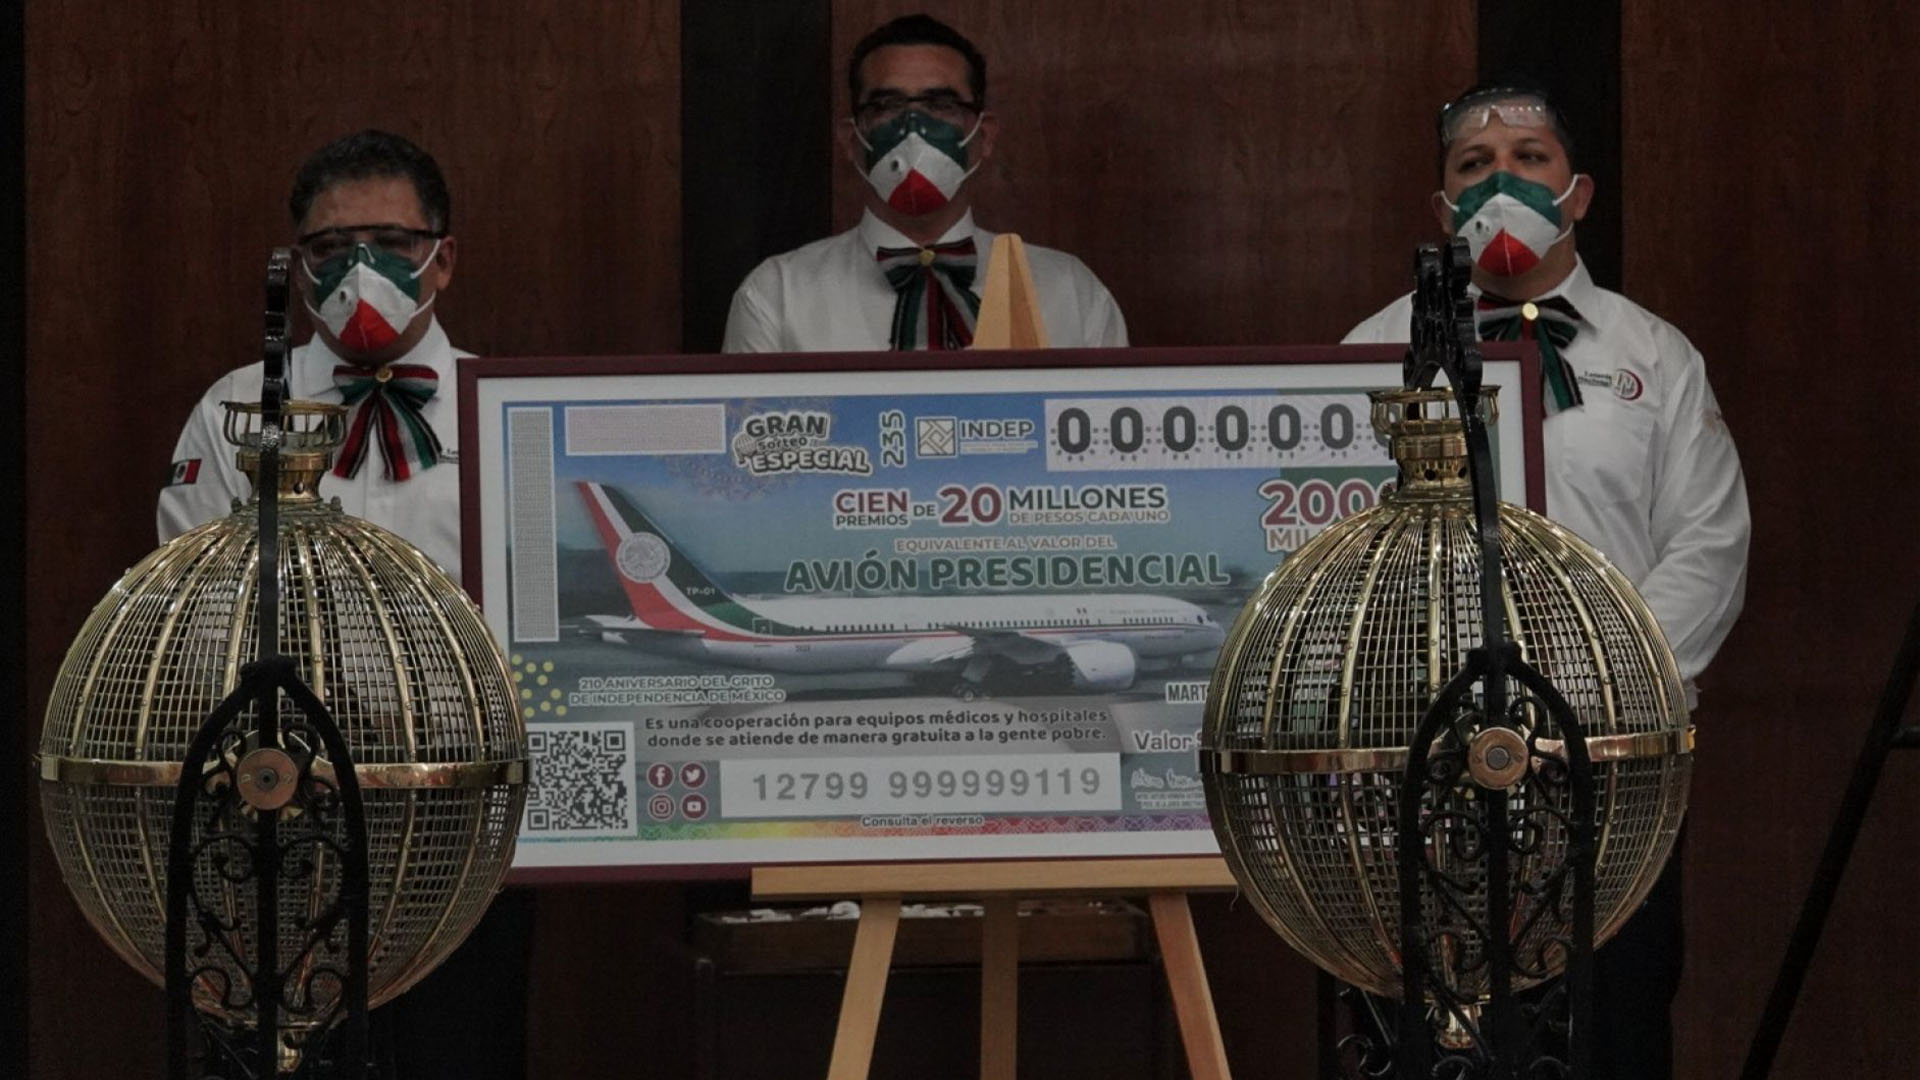 Trabajadores de la lotería junto a una replica gigante del boleto para la rifa del avión presidencial (Foto: Cuartoscuro)